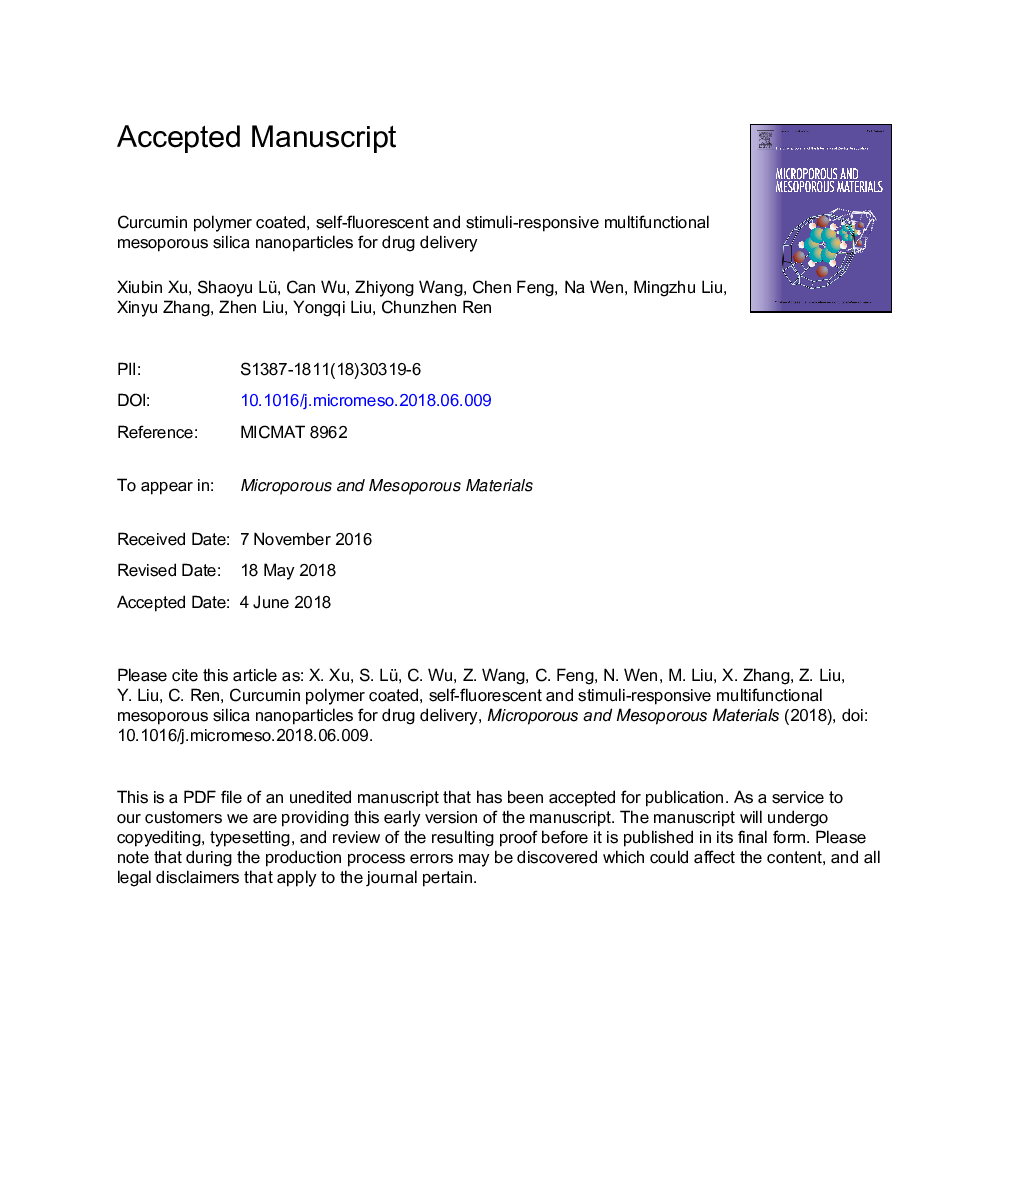 نانوذرات سیلیکای مزوپور چند منظوره با پلی کربوکاتین پوشش داده شده، خود فلورسنت و تحریک کننده پاسخگو برای تحویل دارو 